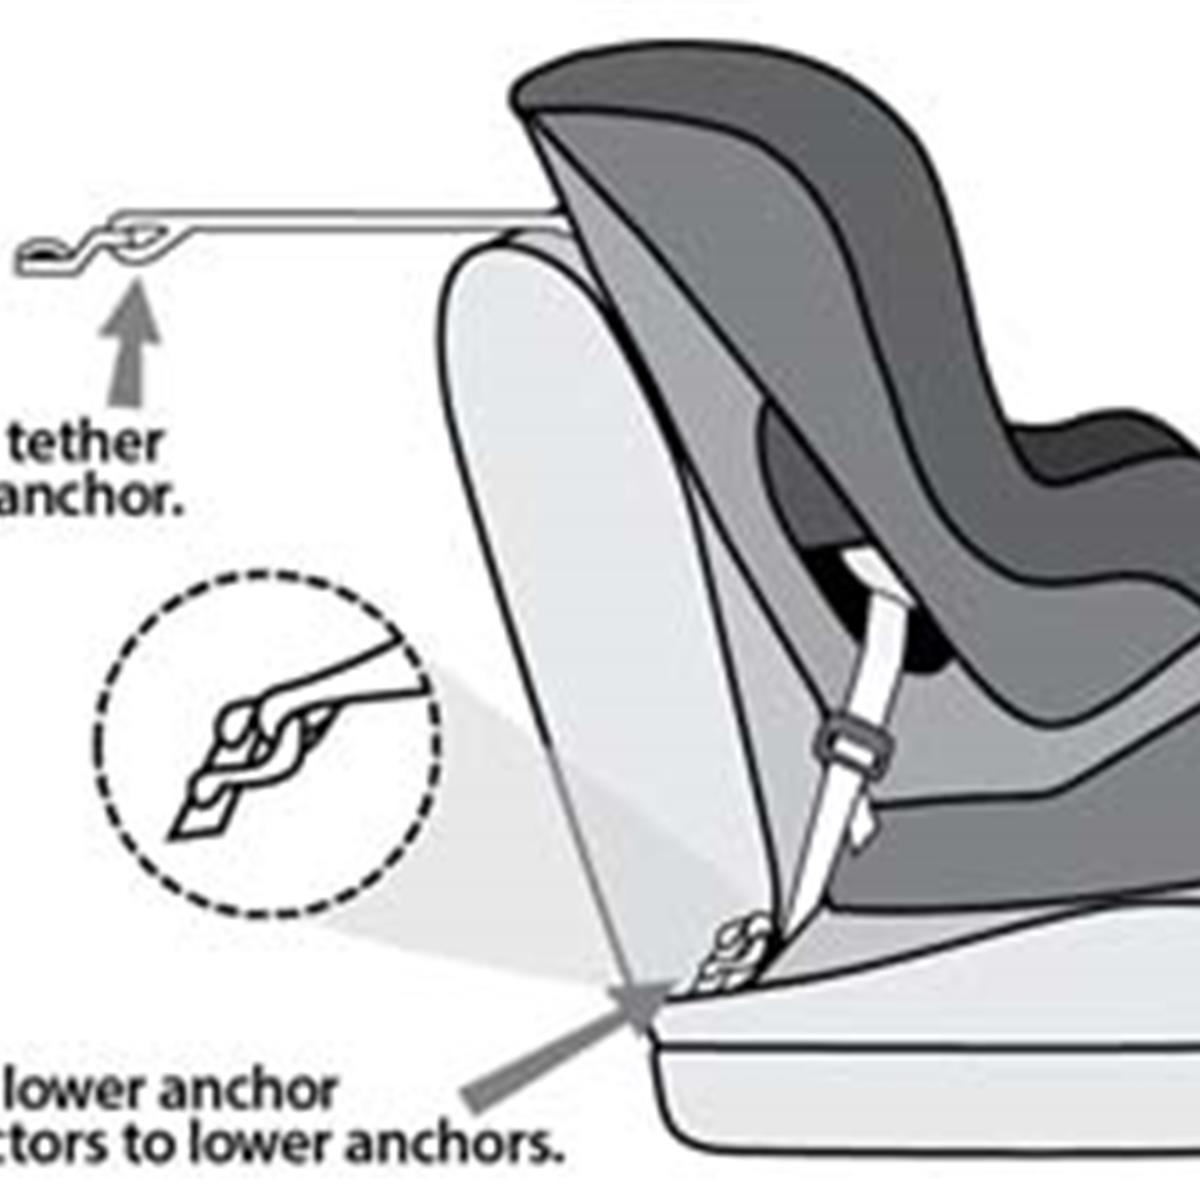 Как крепится кресло в автомобиле